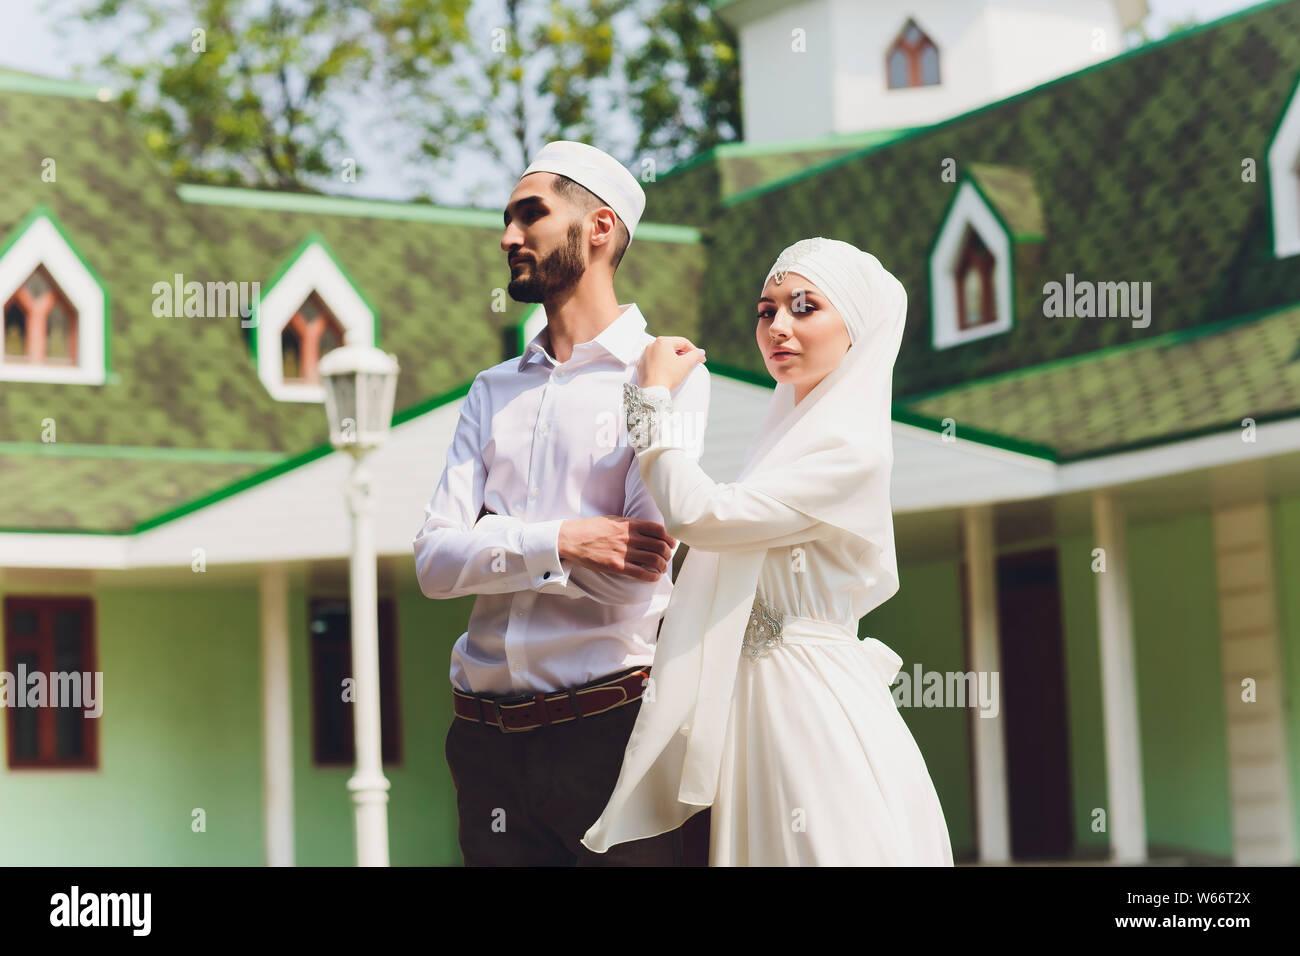 Sposa musulmana con la sciarpa tradizionale matrimonio islamico musulmano  immagini e fotografie stock ad alta risoluzione - Alamy